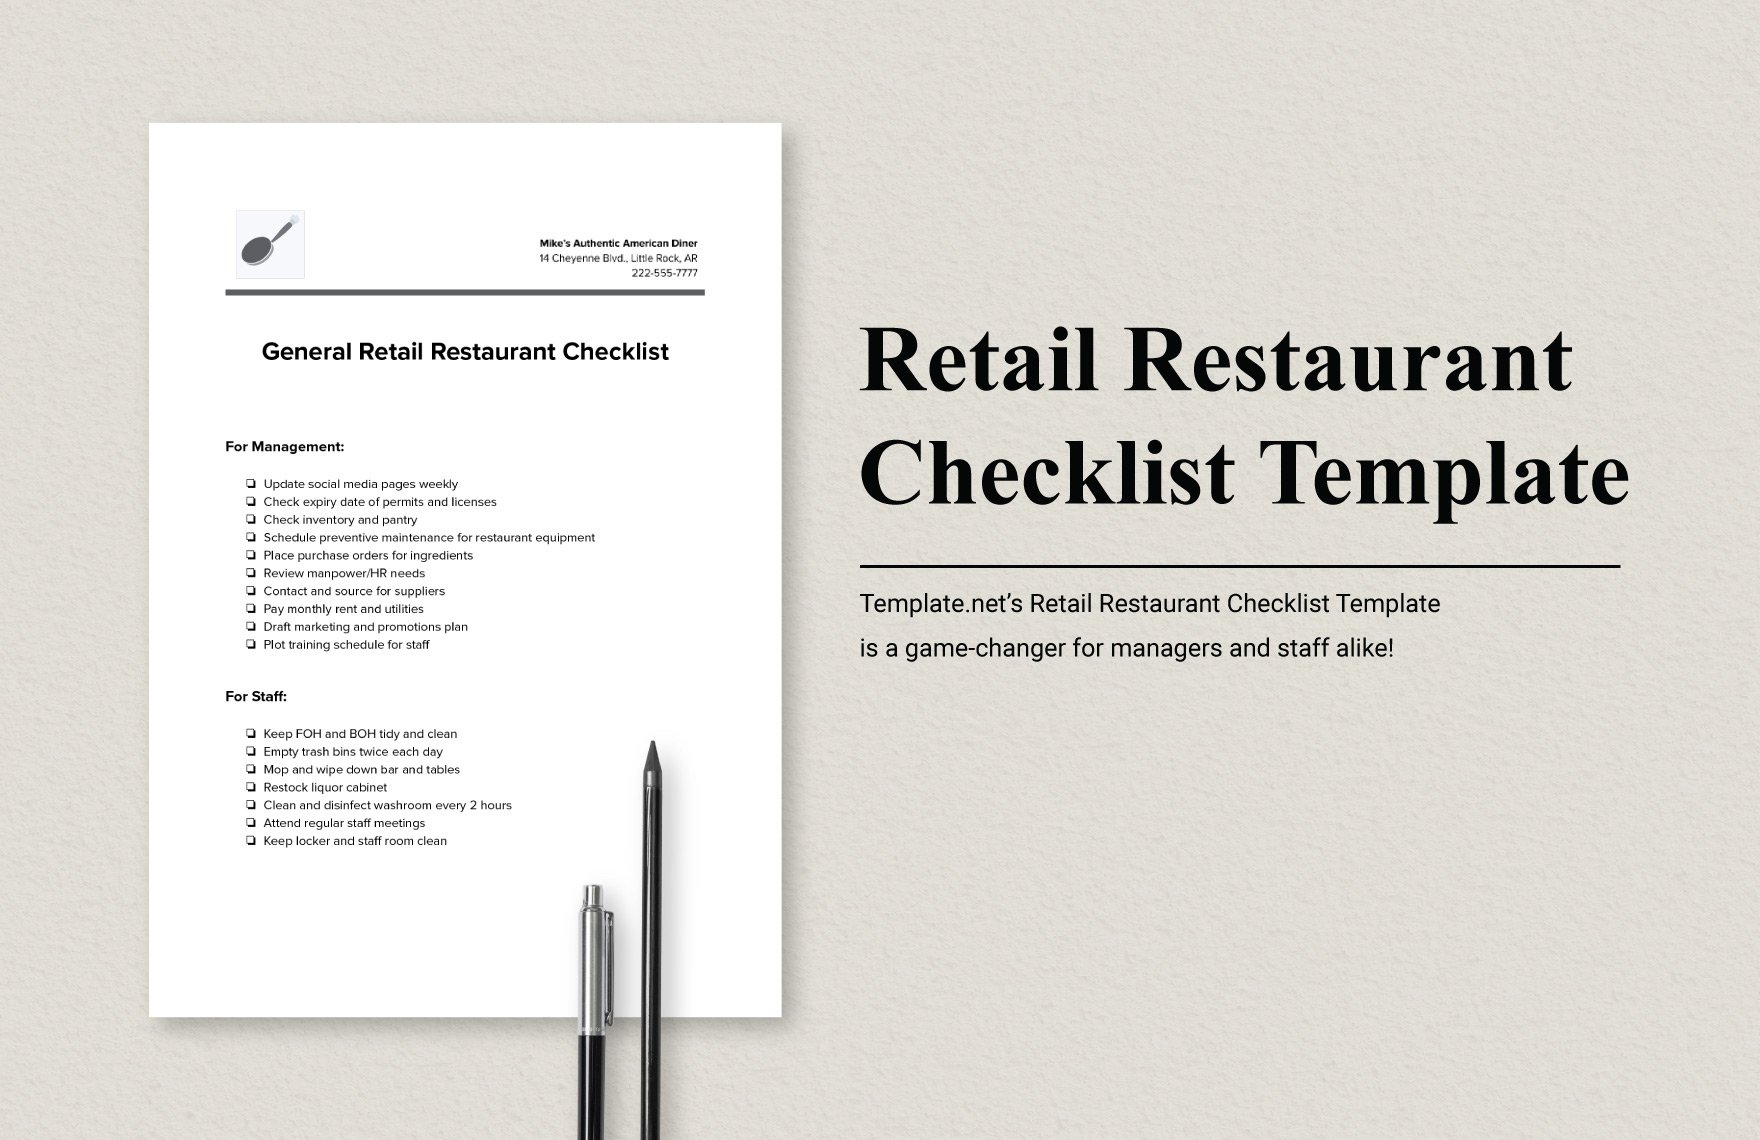 Retail Restaurant Checklist Template